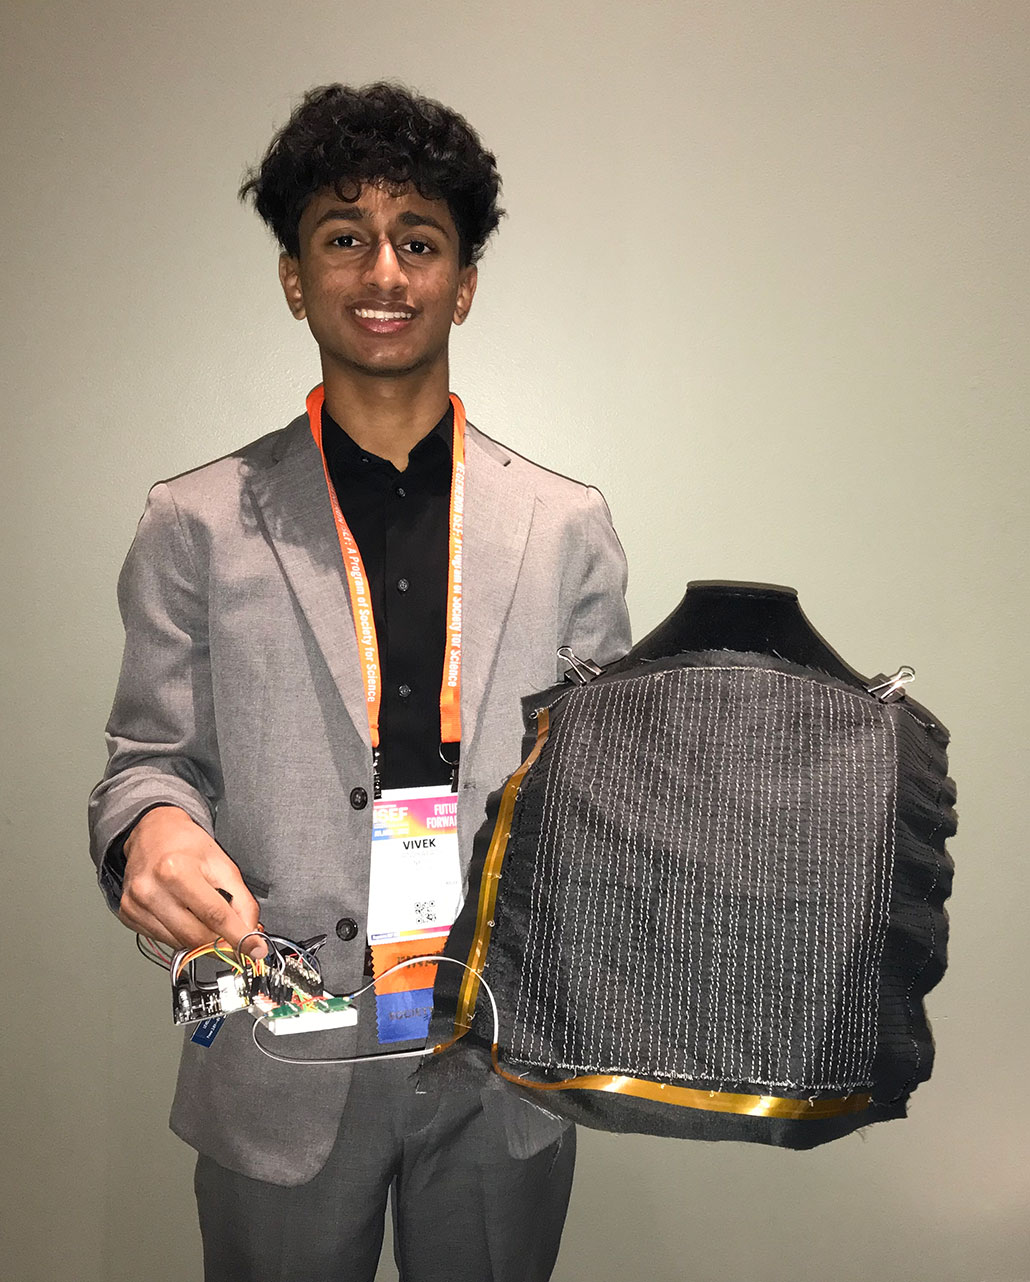 una foto de Vivek Sandrapaty sosteniendo un prototipo de chaleco antibalas